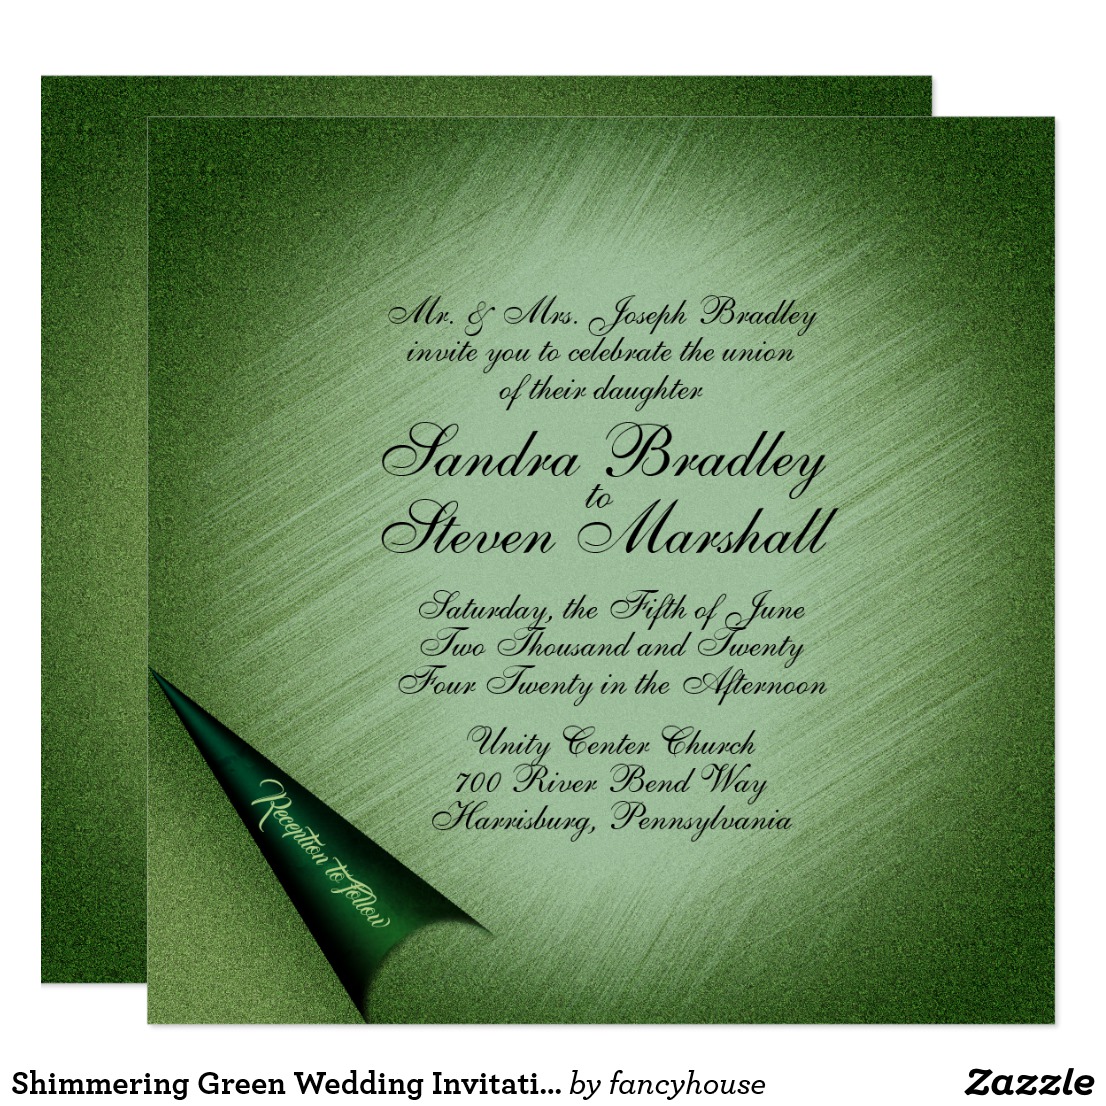 Shimmering Green Wedding Invitation